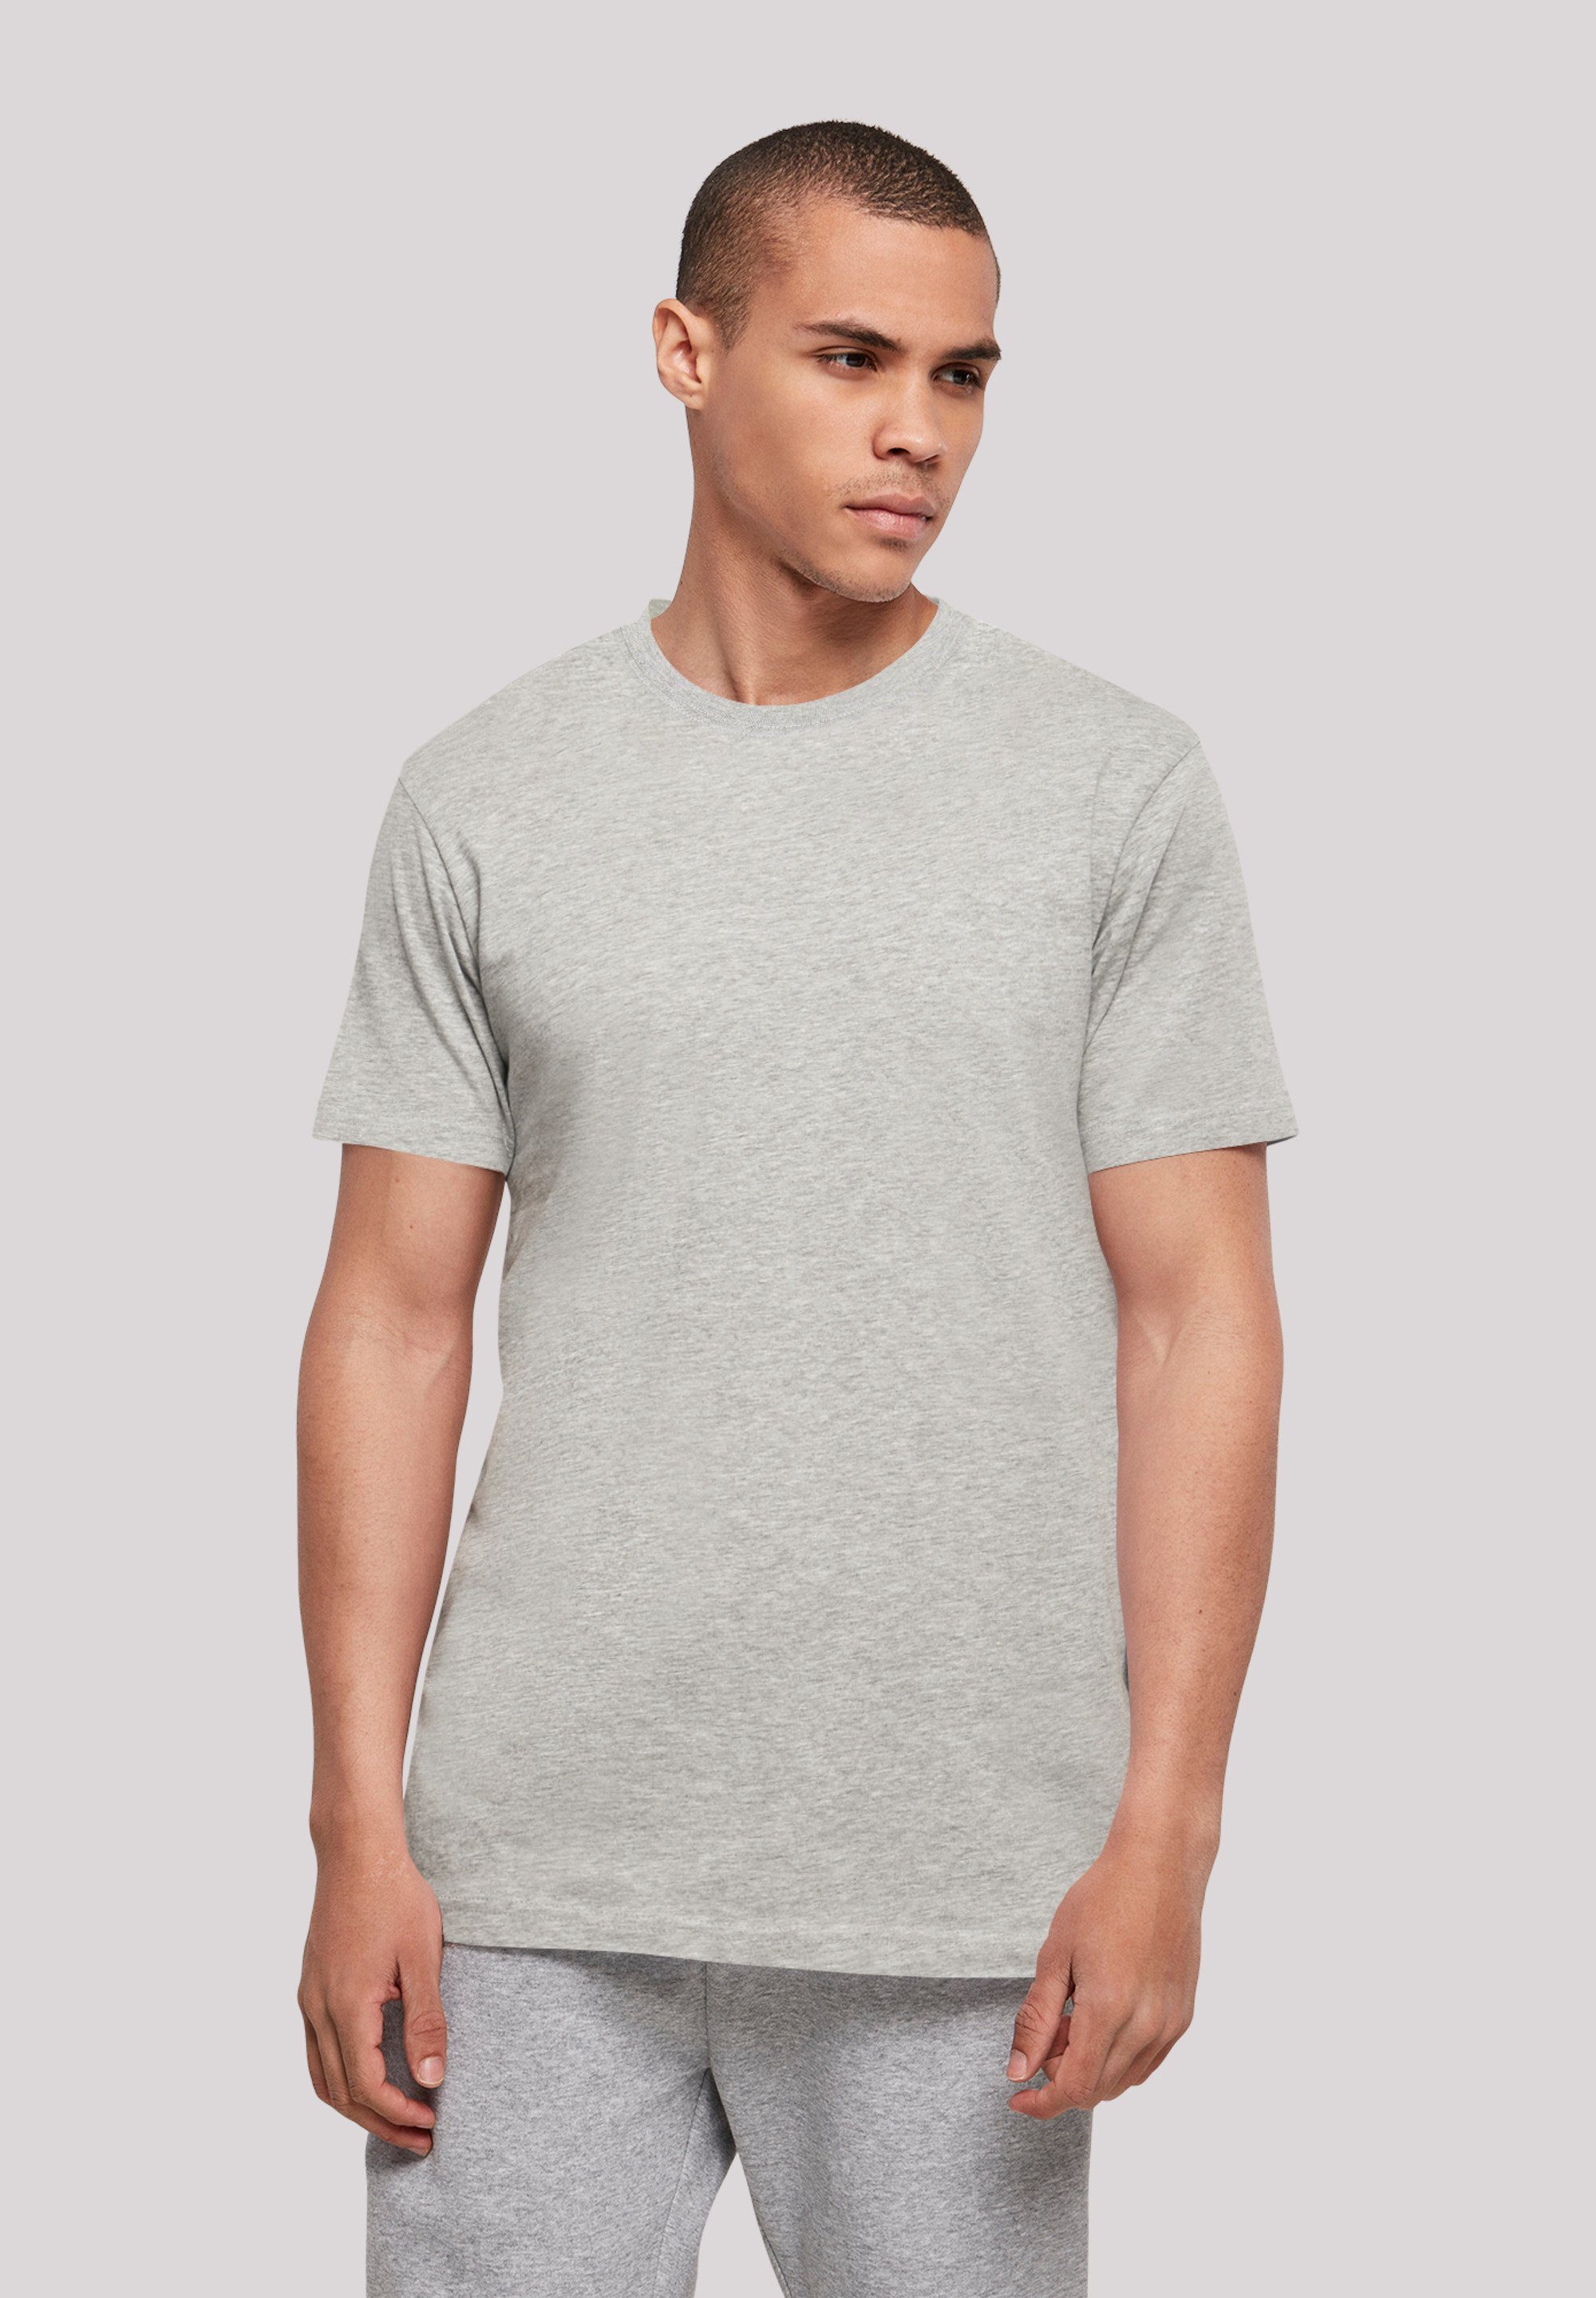 [Sie können echte Produkte zu günstigen Preisen kaufen!] F4NT4STIC T-Shirt Brooklyn 98 UNISEX grey heather Print NY TEE